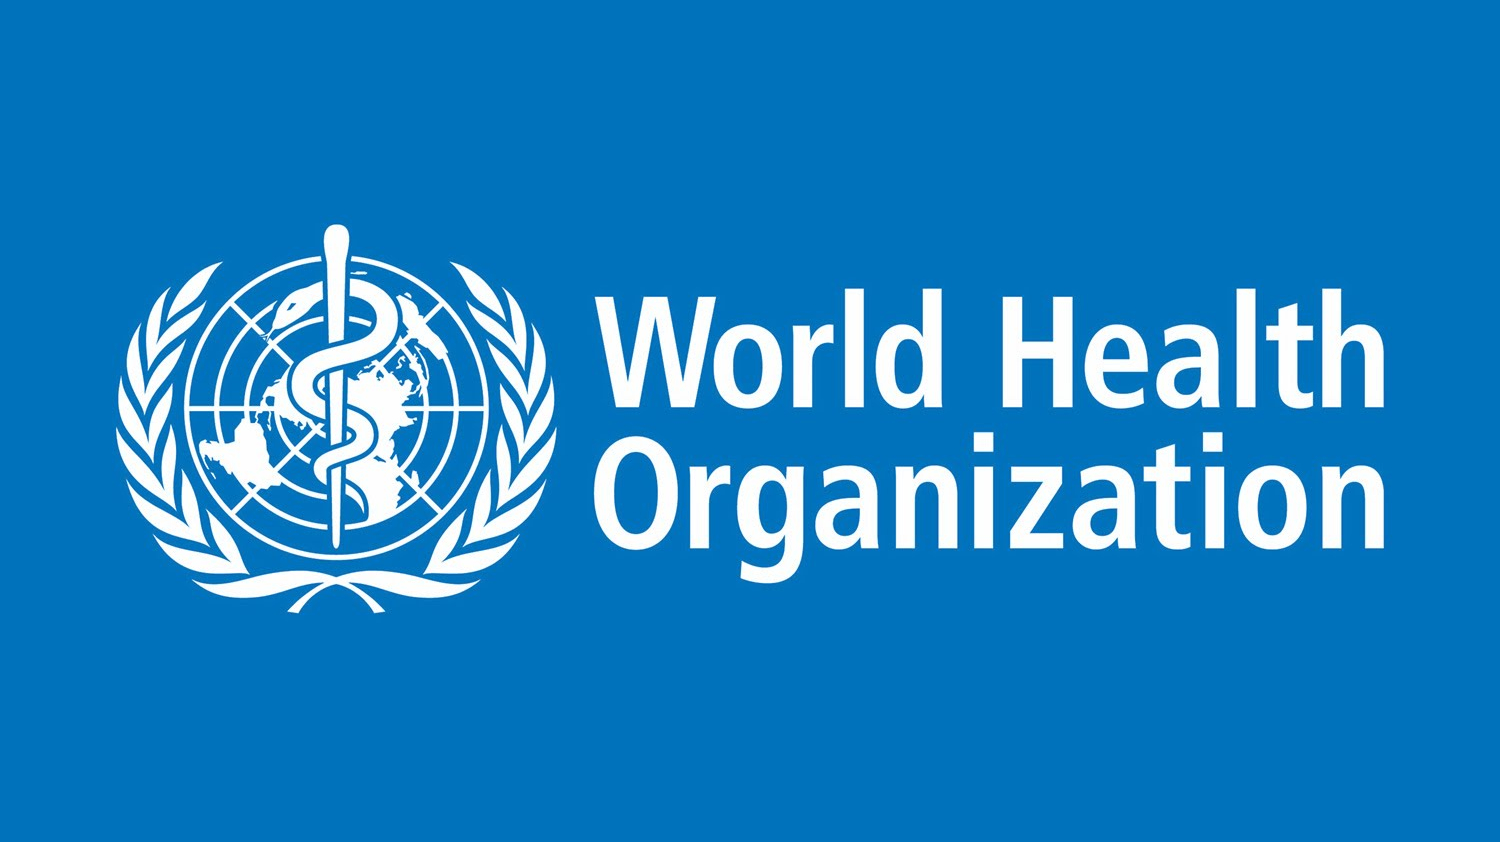 Las Organizaciones Mundiales de Salud y Turismo consideran “innecesario” imponer restricciones a los viajes por el coronavirus